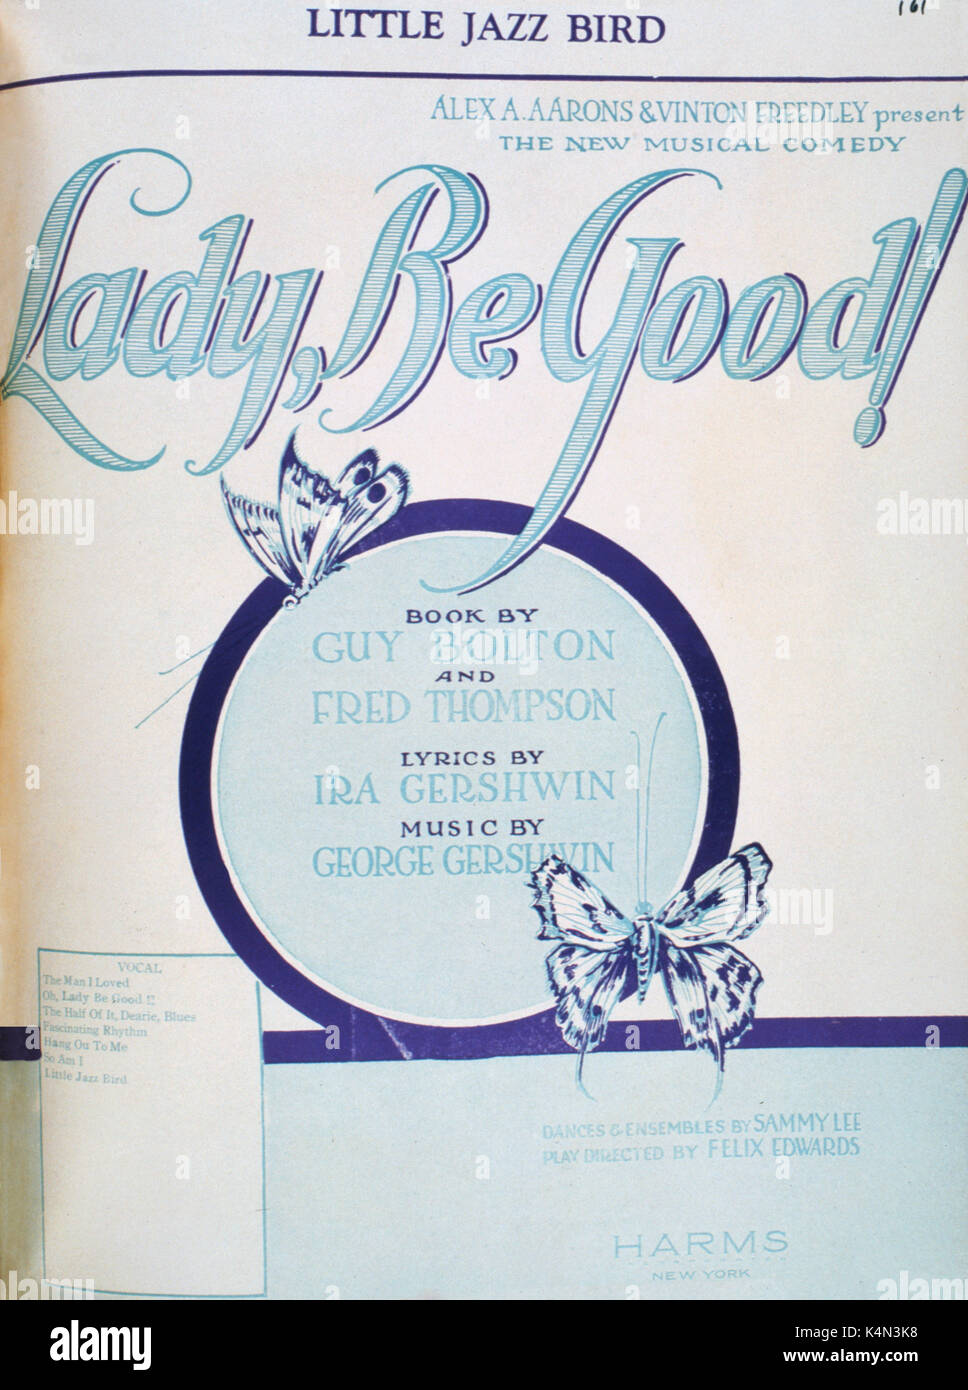 George Gershwins 'Lady gutes" Ergebnis. Aus dem Buch von Fred Thompson und Guy Bolton. Lyrics von Ira Gershwin. Musik von George Gershwin. Amerikanische Komponist und Pianist (1870-1939). Stockfoto